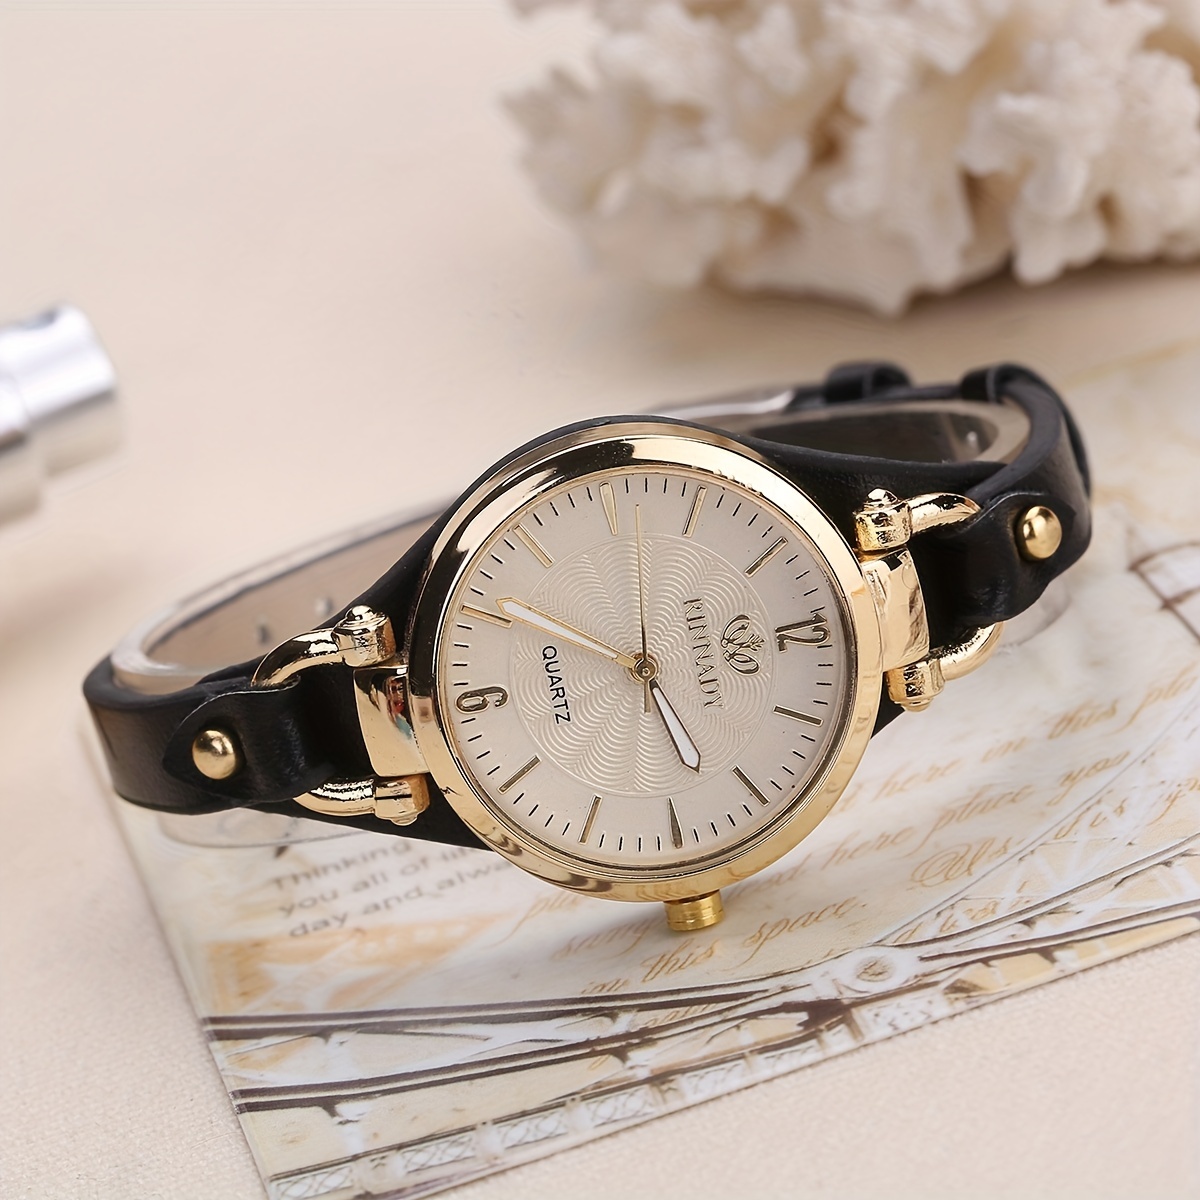 Relojes con correa de piel para un look clásico y MUY atractivo